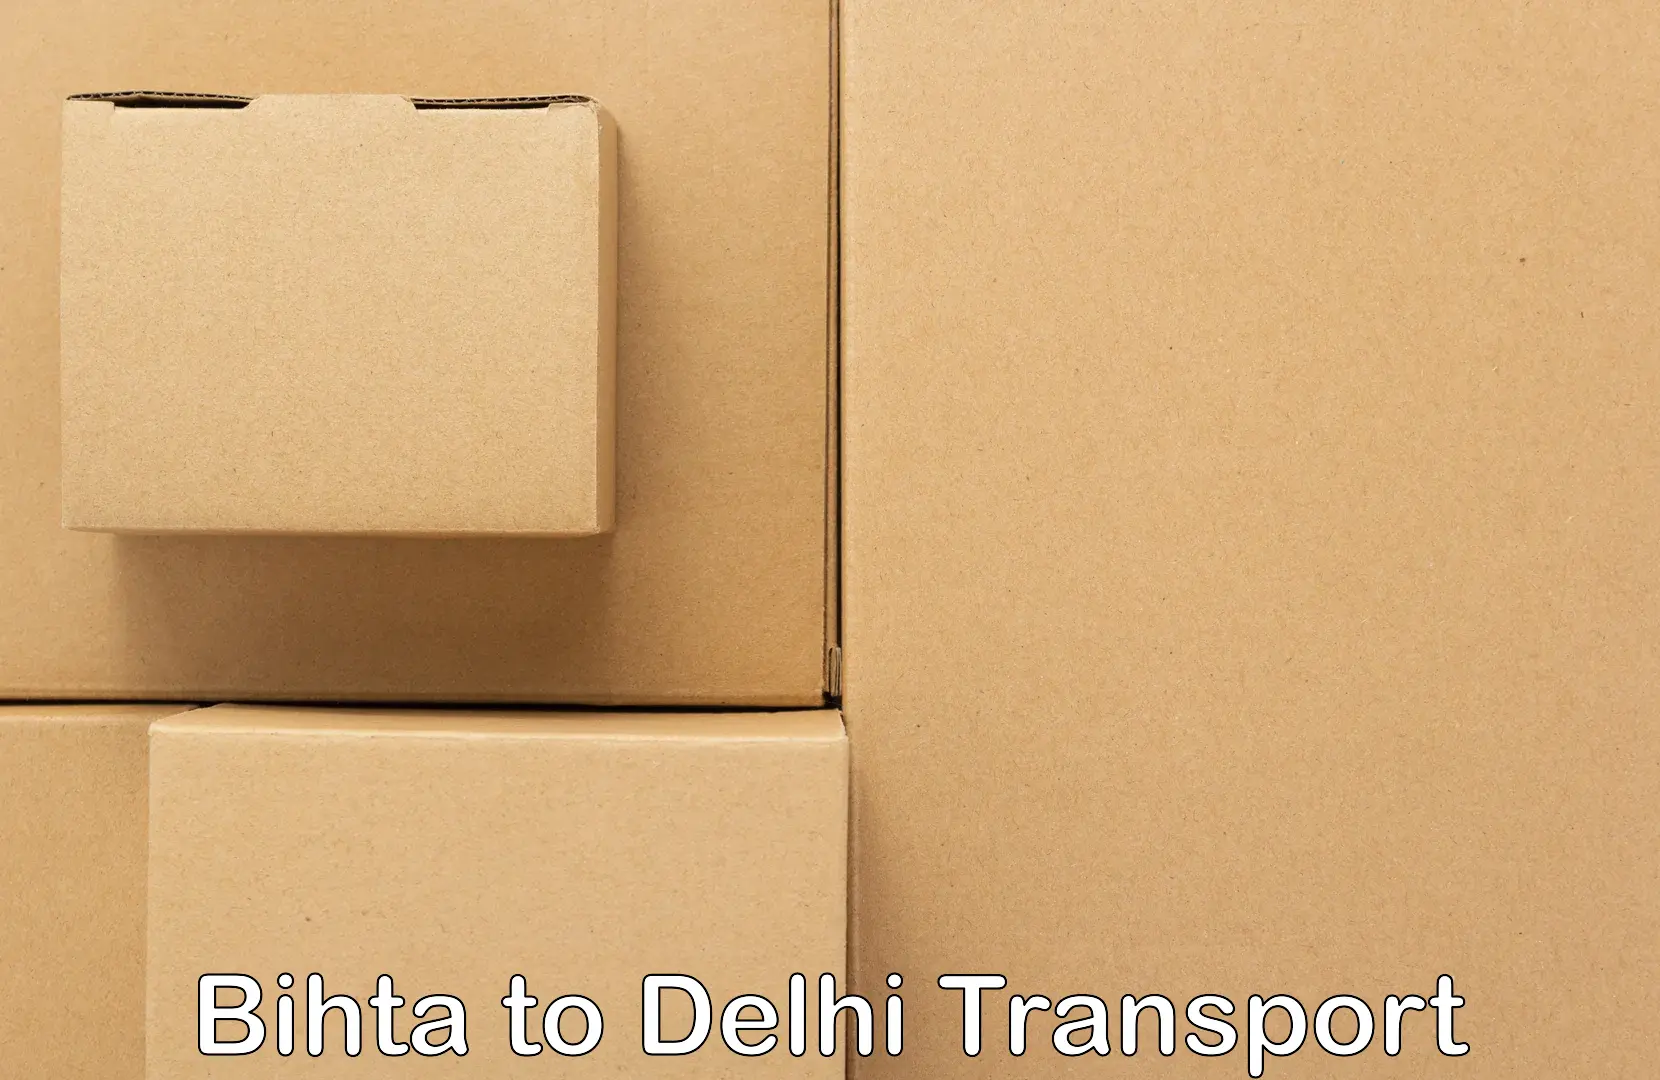 Commercial transport service in Bihta to Jamia Hamdard New Delhi